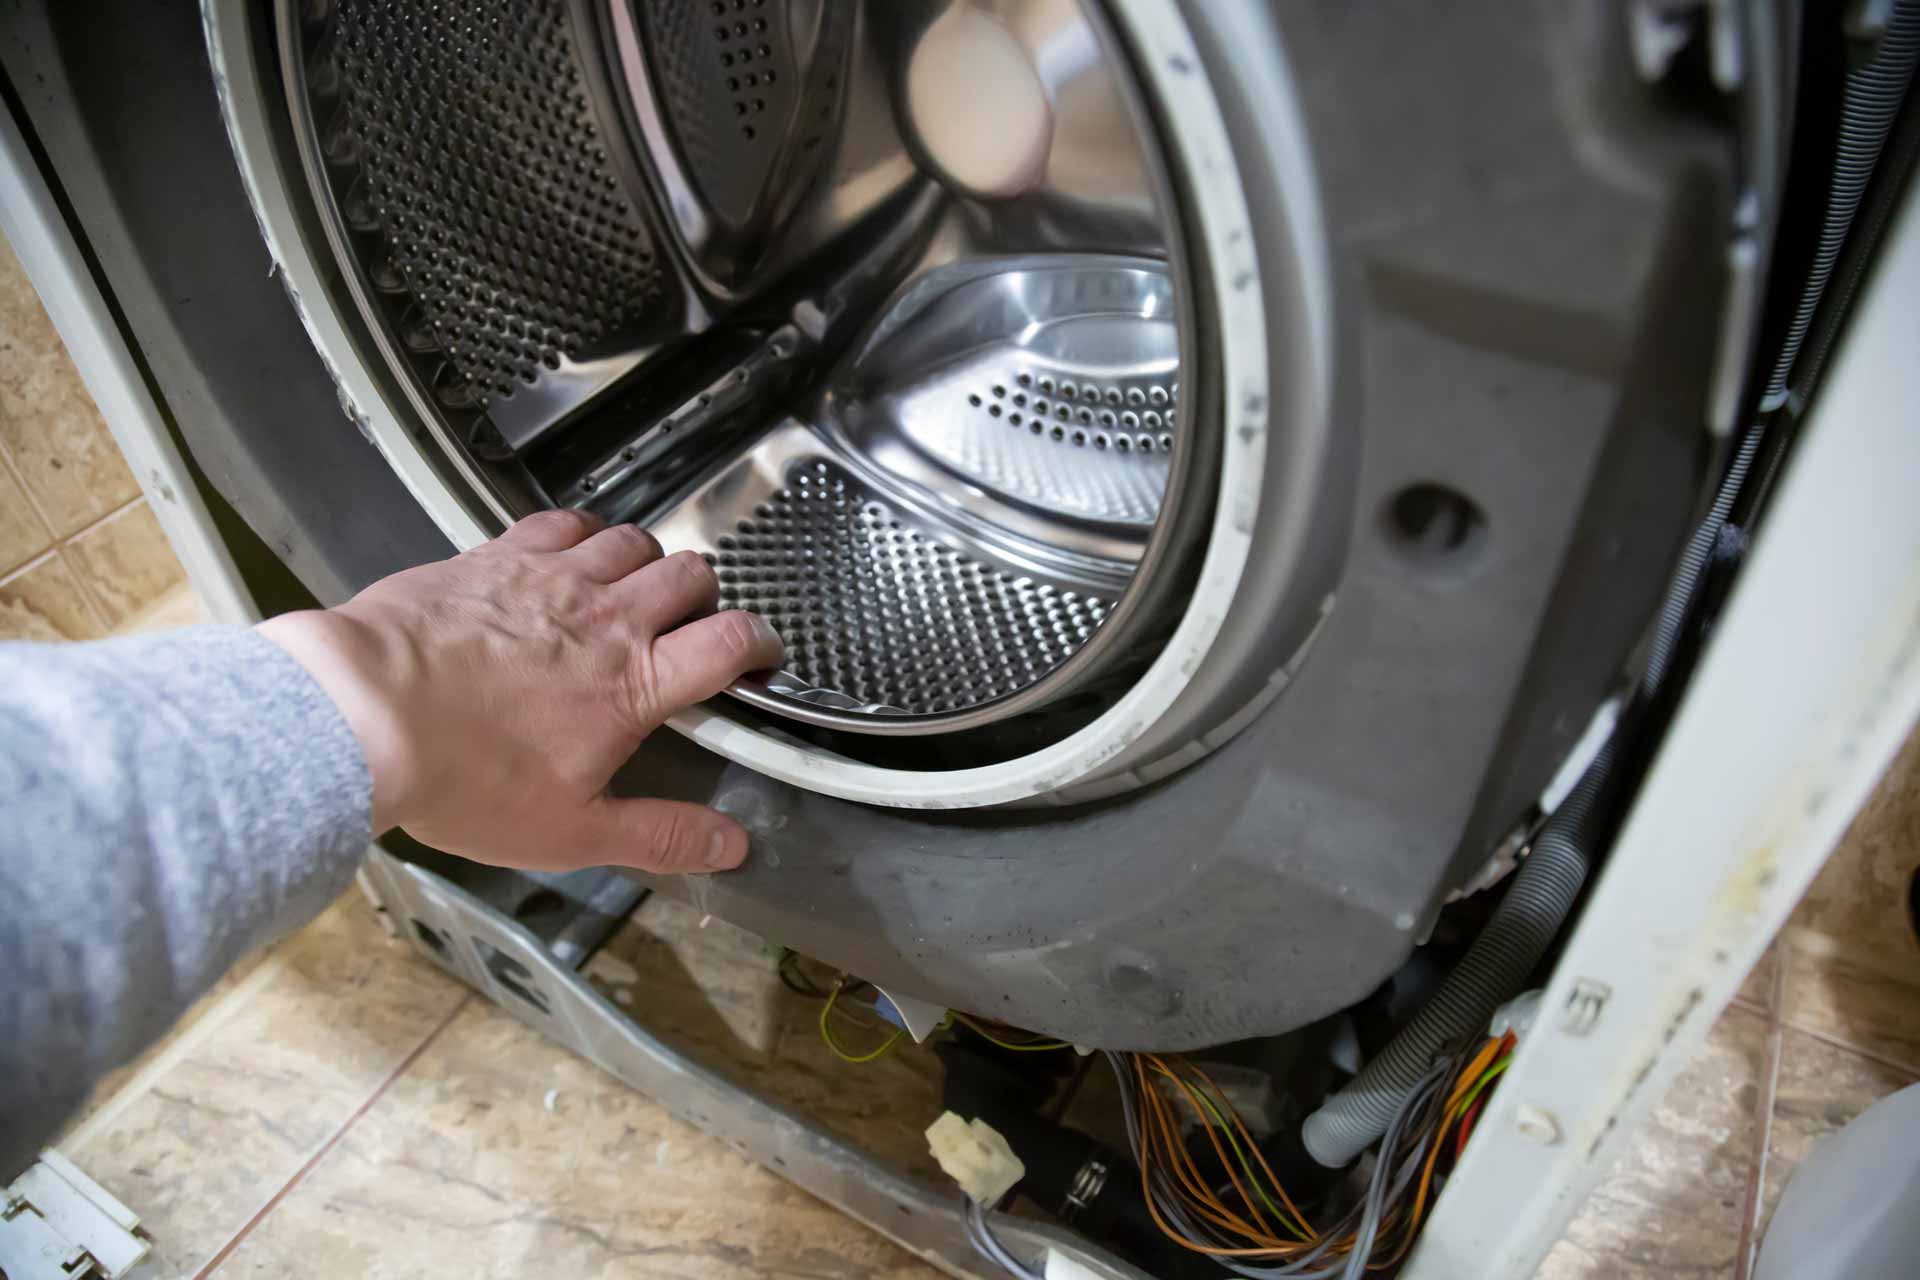 Appliance repair technician repairing a dryer